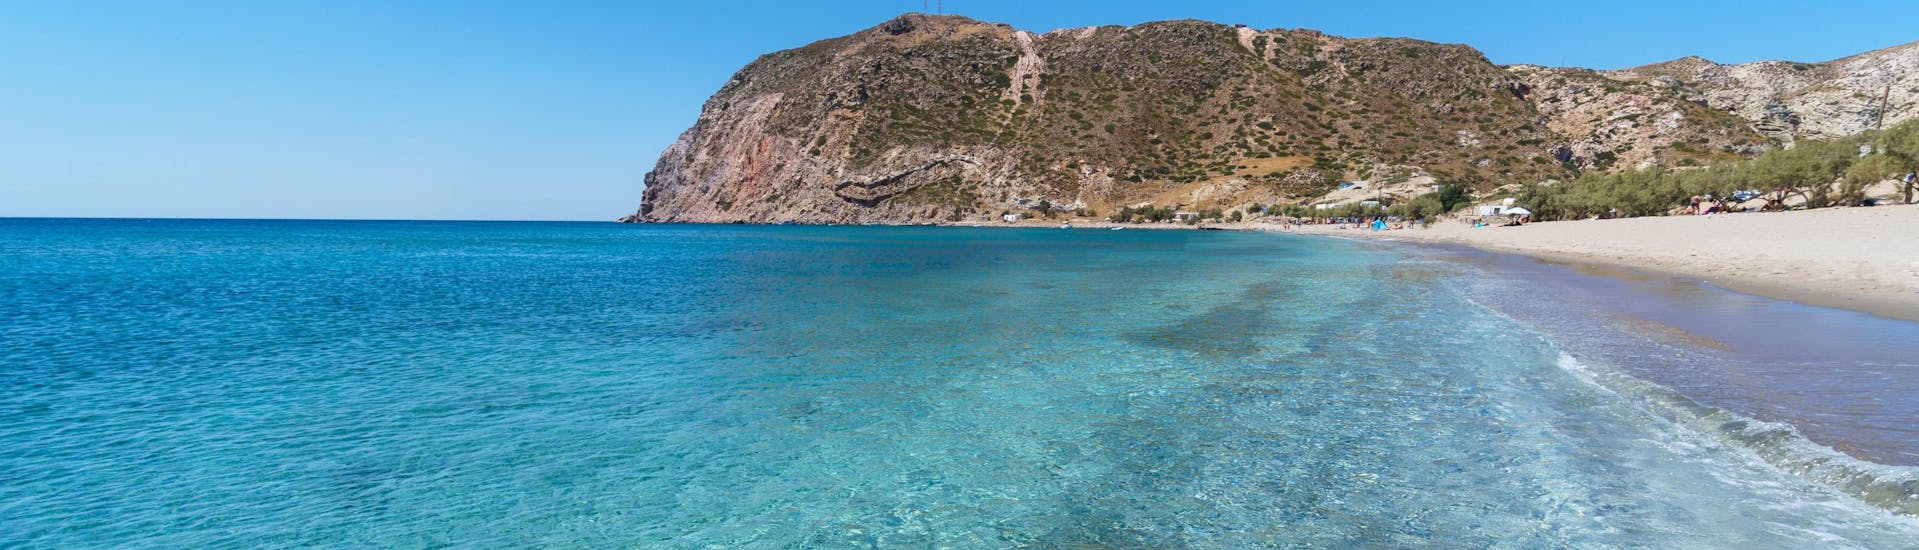 Vue sur la plage d'Agia Kiriaki, un endroit magnifique à visiter lors d'une balade en bateau à Milos.